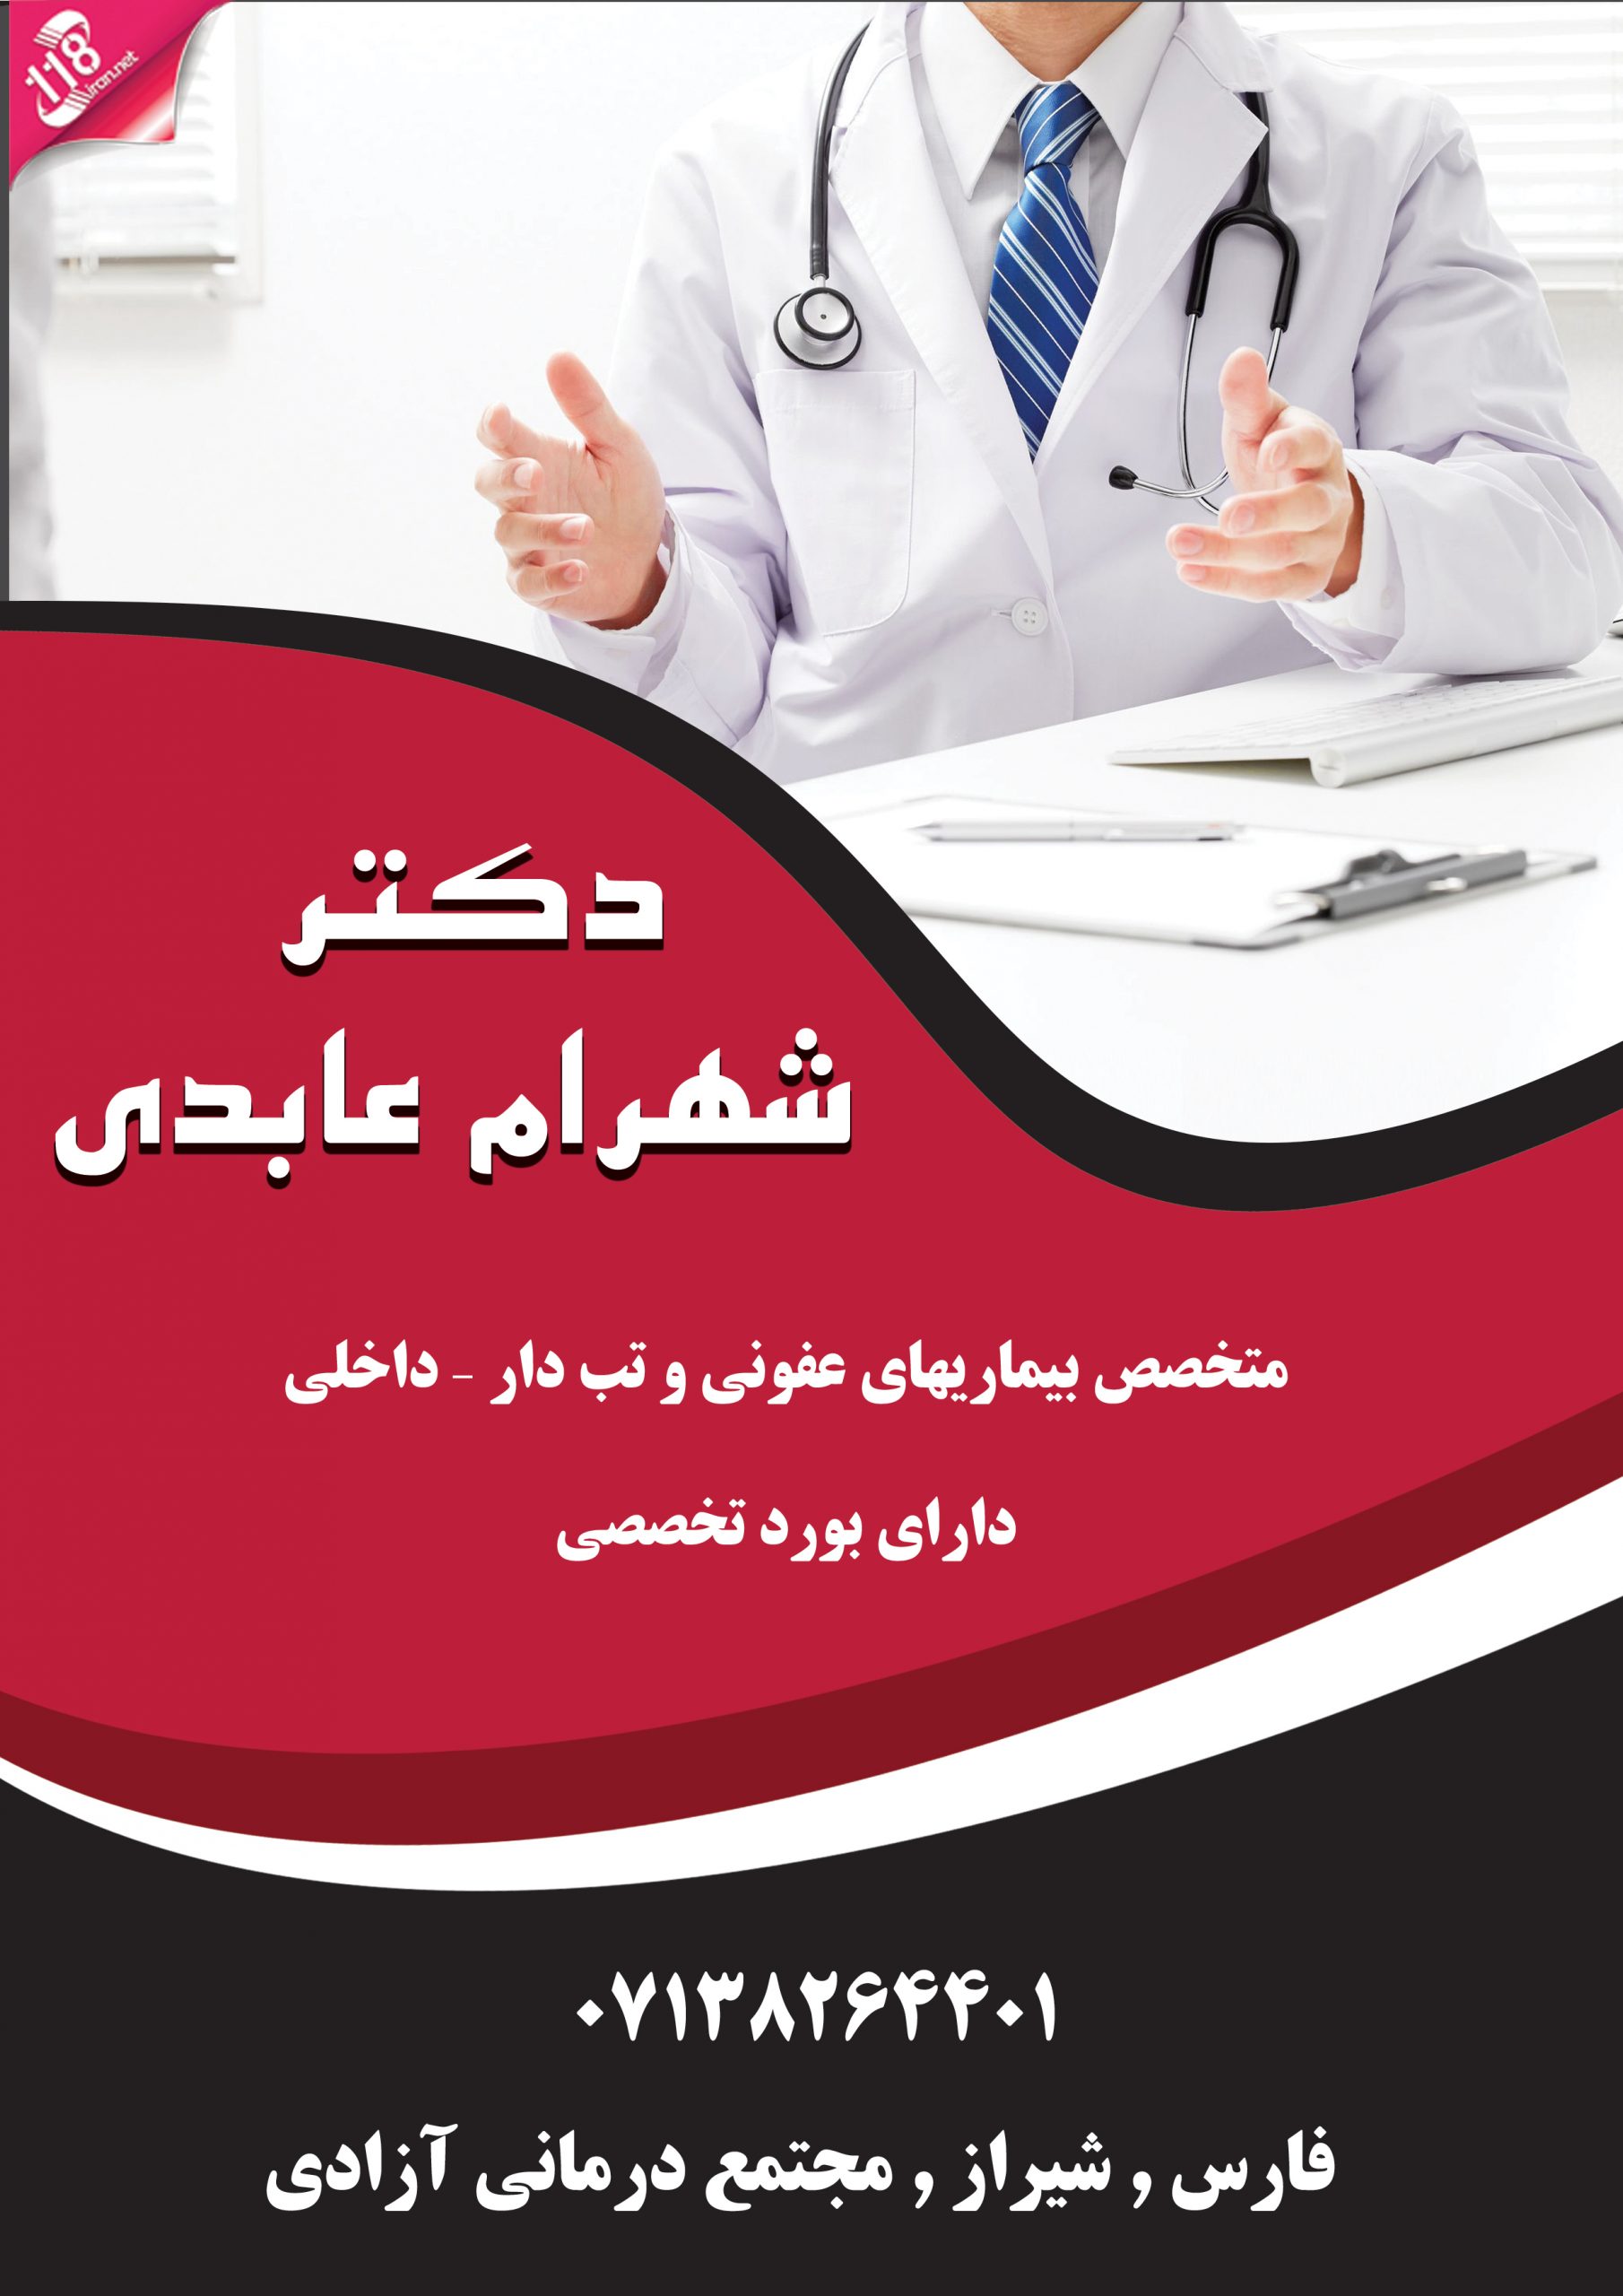  دکتر شهرام عابدی در شیراز